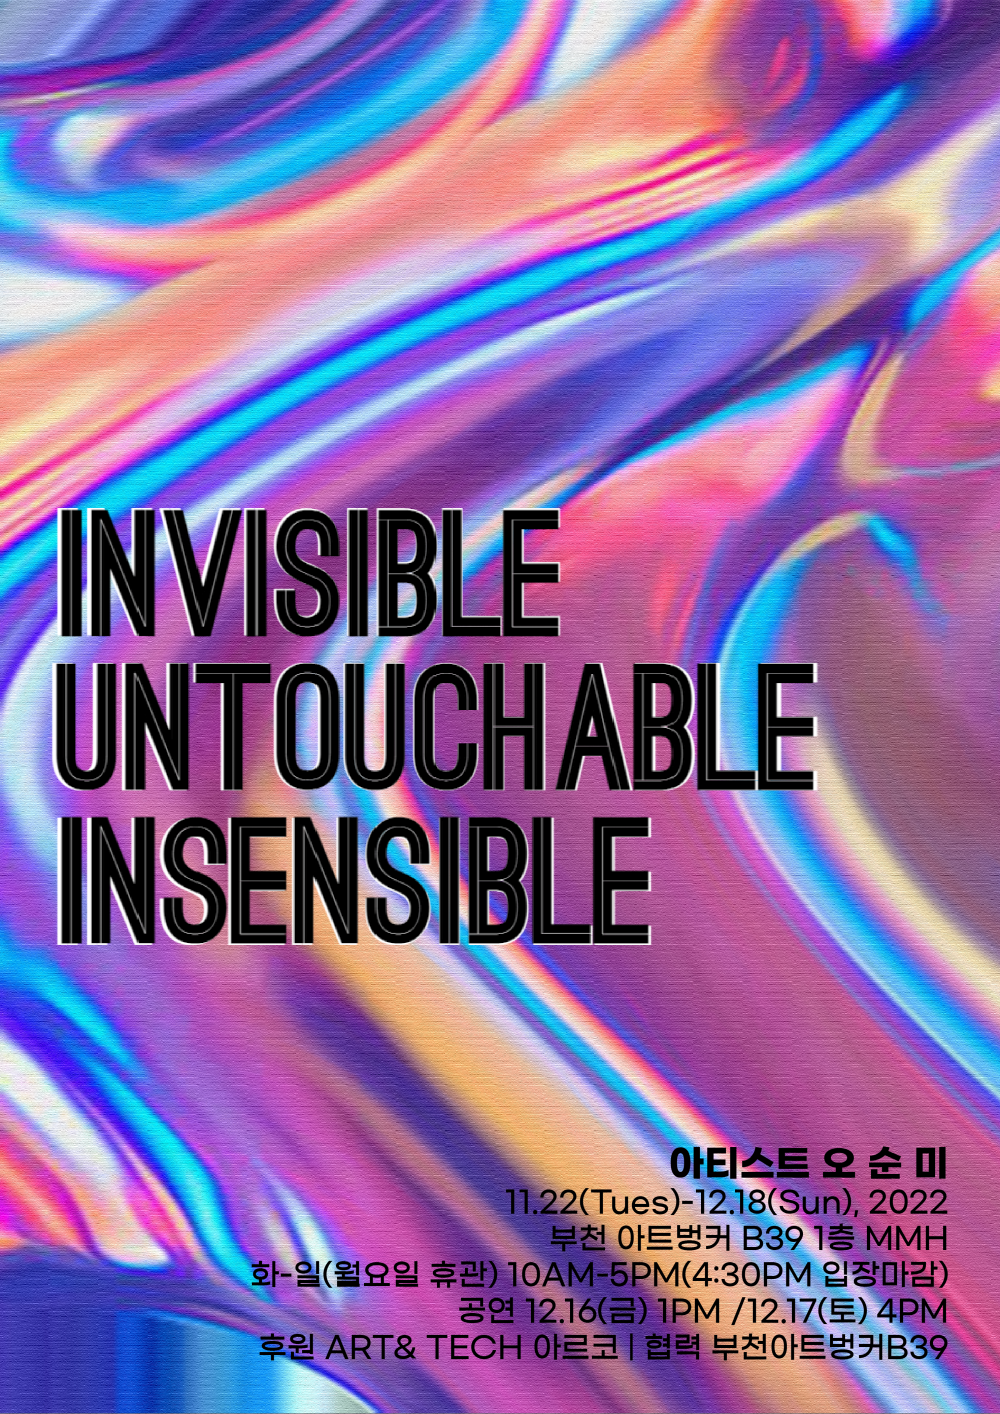 공간의 불가촉성(不可觸性) Invisible Untouchable Insensible